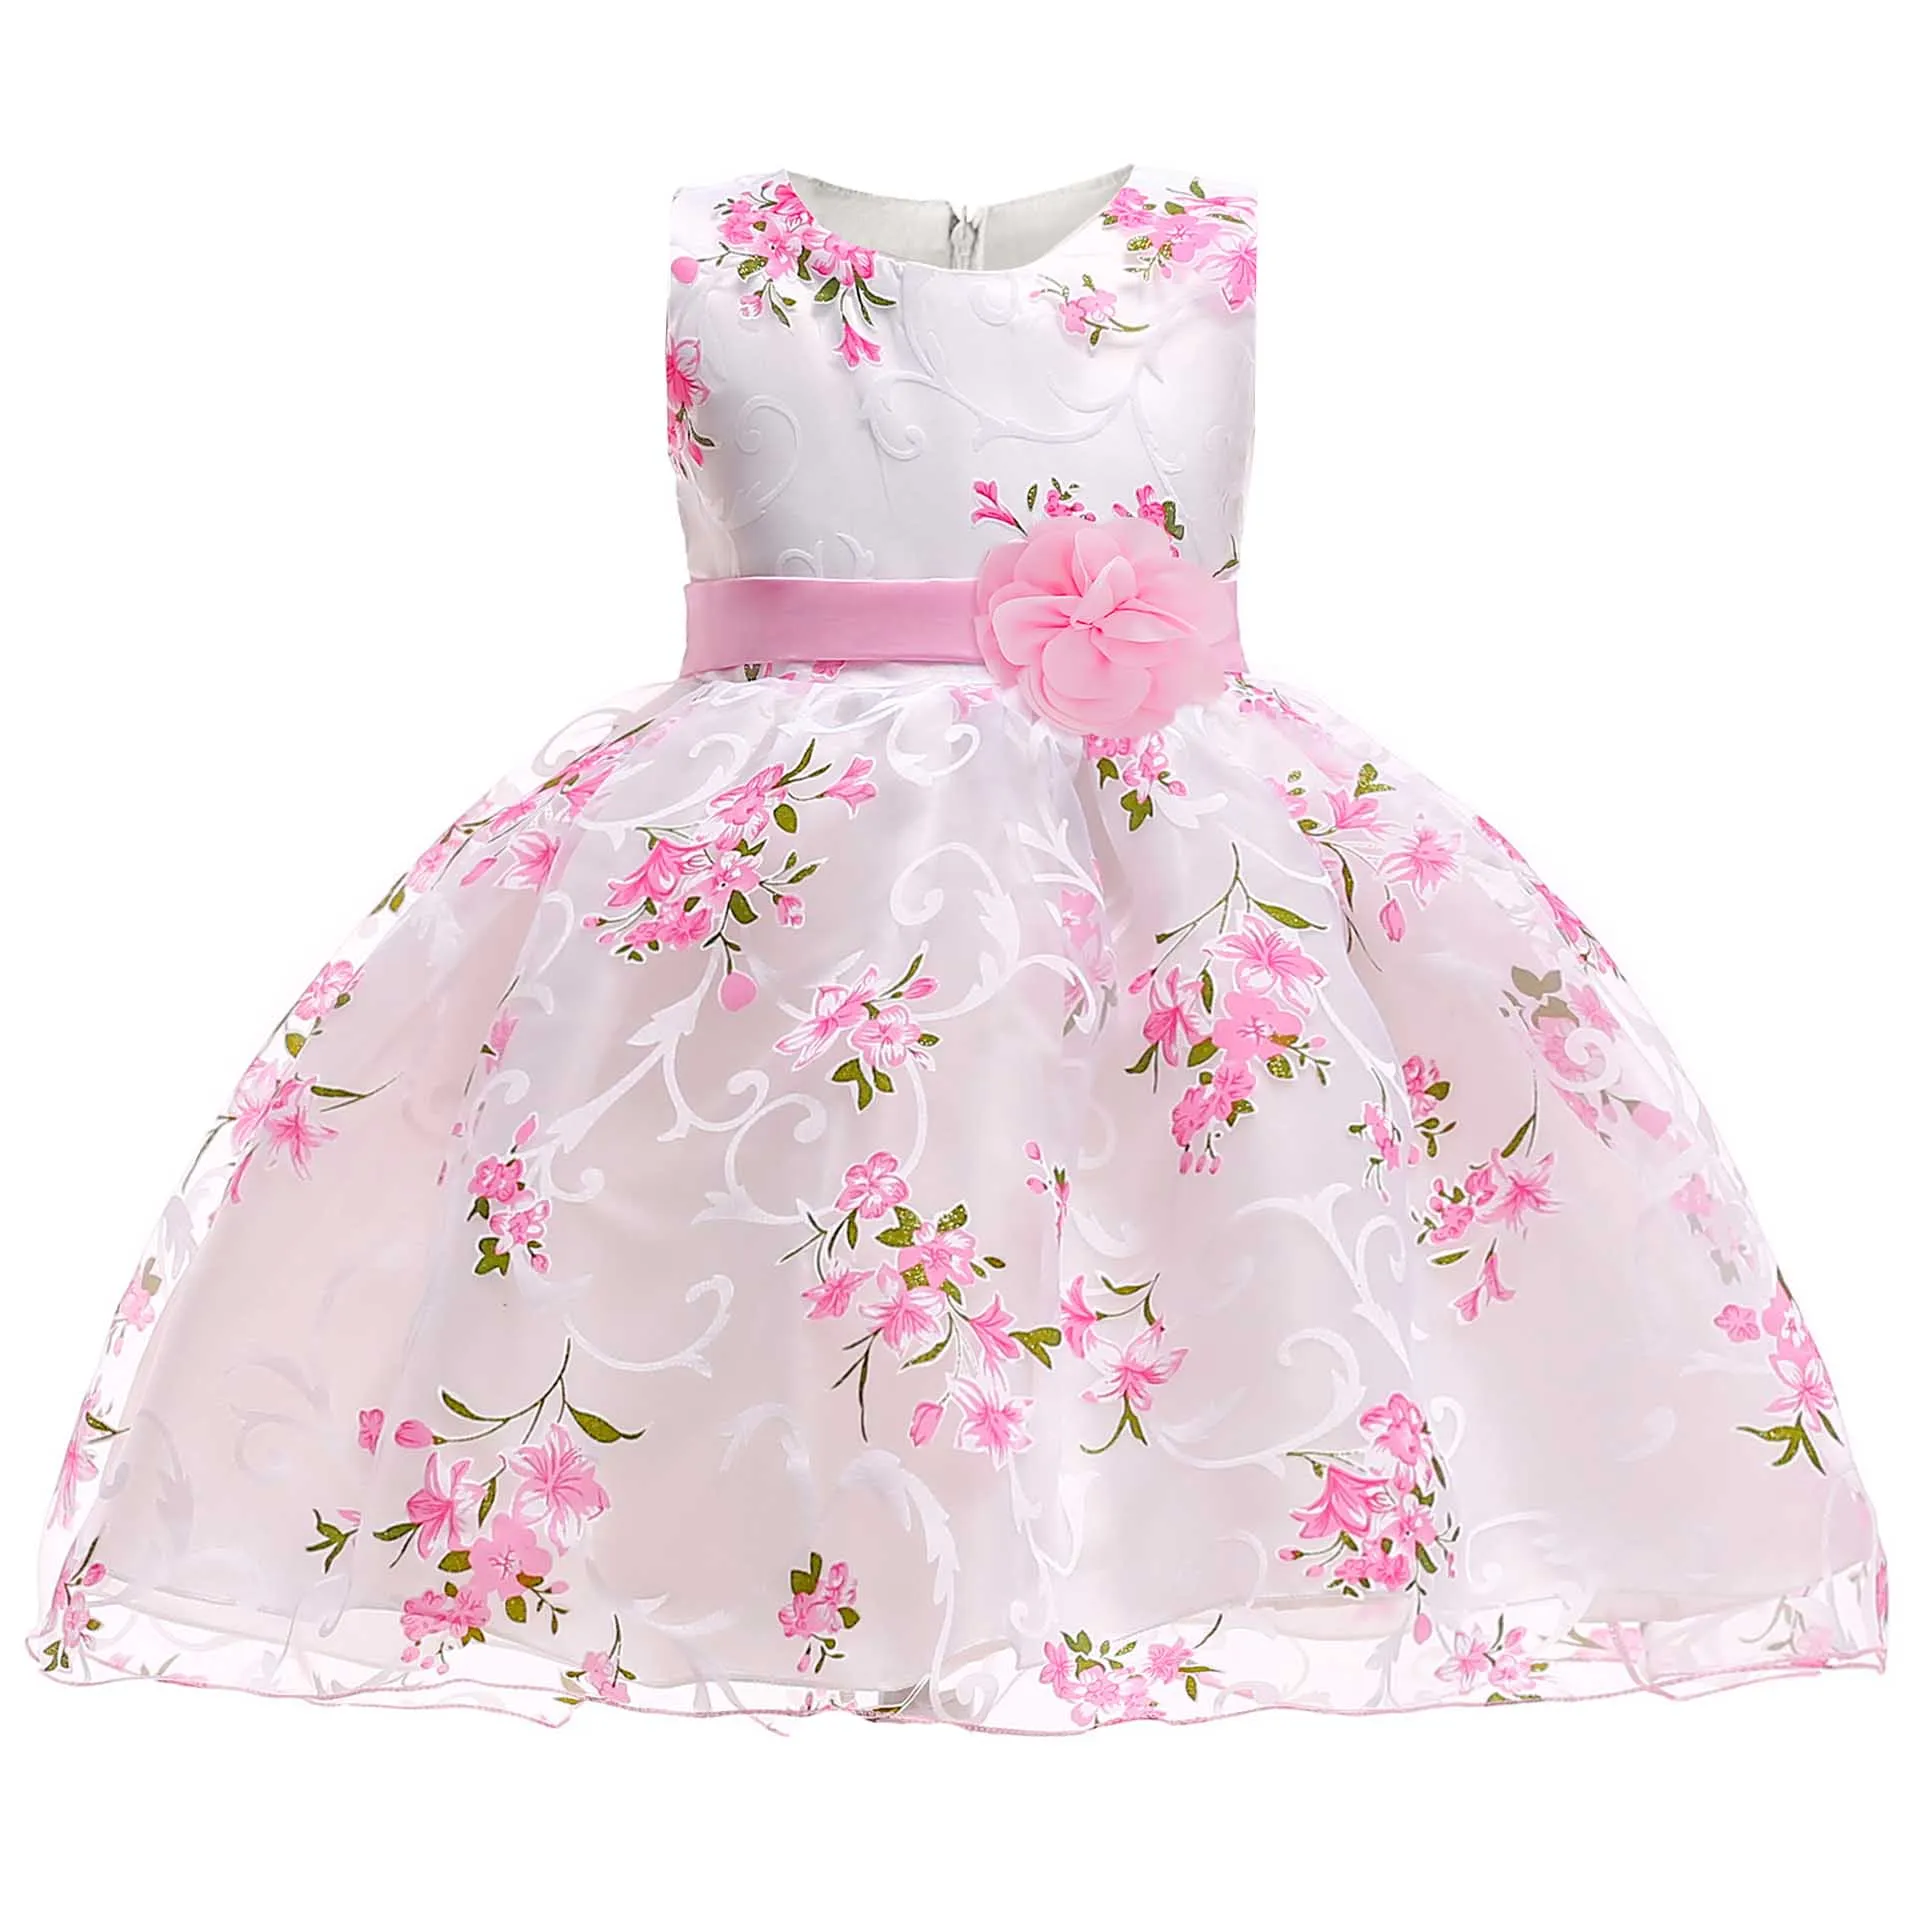 Г. Летняя детская праздничная одежда бальное платье для девочек, свадебная одежда платье принцессы для первого причастия костюм для малышей, одежда L5033 - Цвет: pink